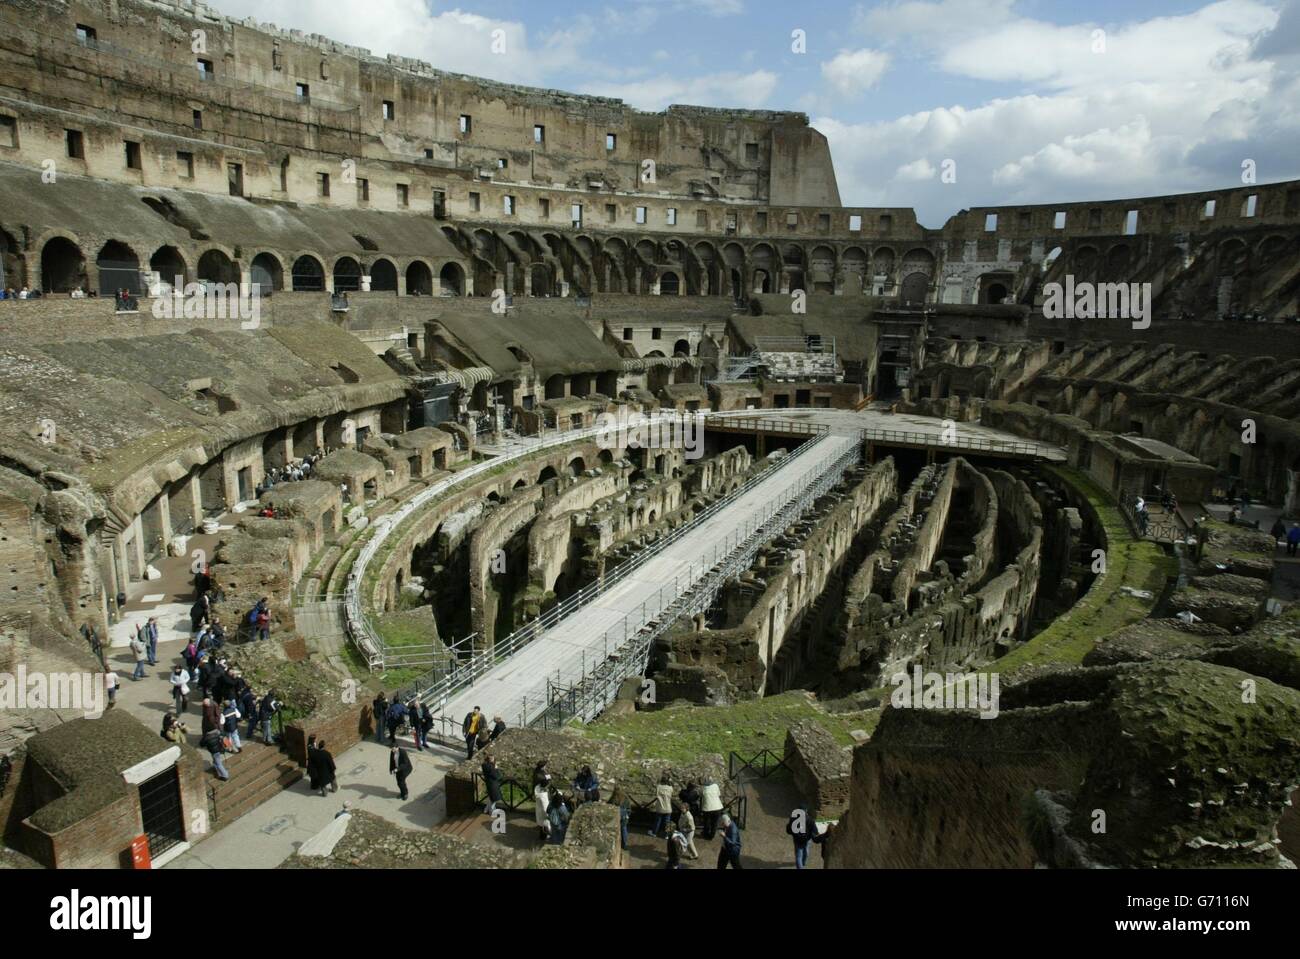 Il Colosseo fu costruito durante il regno dell'imperatore Vespasiano nel sec. a.C. e fu dedicato nel 80 d.C. dal figlio Tito. Il nome popolare del Colosseo ebbe luogo perché l'immenso stadio ovale si trovava accanto ad una colossale statua di Nerone. Il nome originale di questa antica arena sportiva romana, la più grande del suo genere, è l'Amphitheatrum Flavium. Oltre 160 metri di altezza con ottanta ingressi, il Colosseo poteva ospitare fino a 50,000 spettatori. Al Colosseo si tennero eventi pubblici come lotte di gladiatori, battaglie navali fittizie e cacciate di animali selvatici. Durante i combattimenti in scena fino a 10,000 Foto Stock